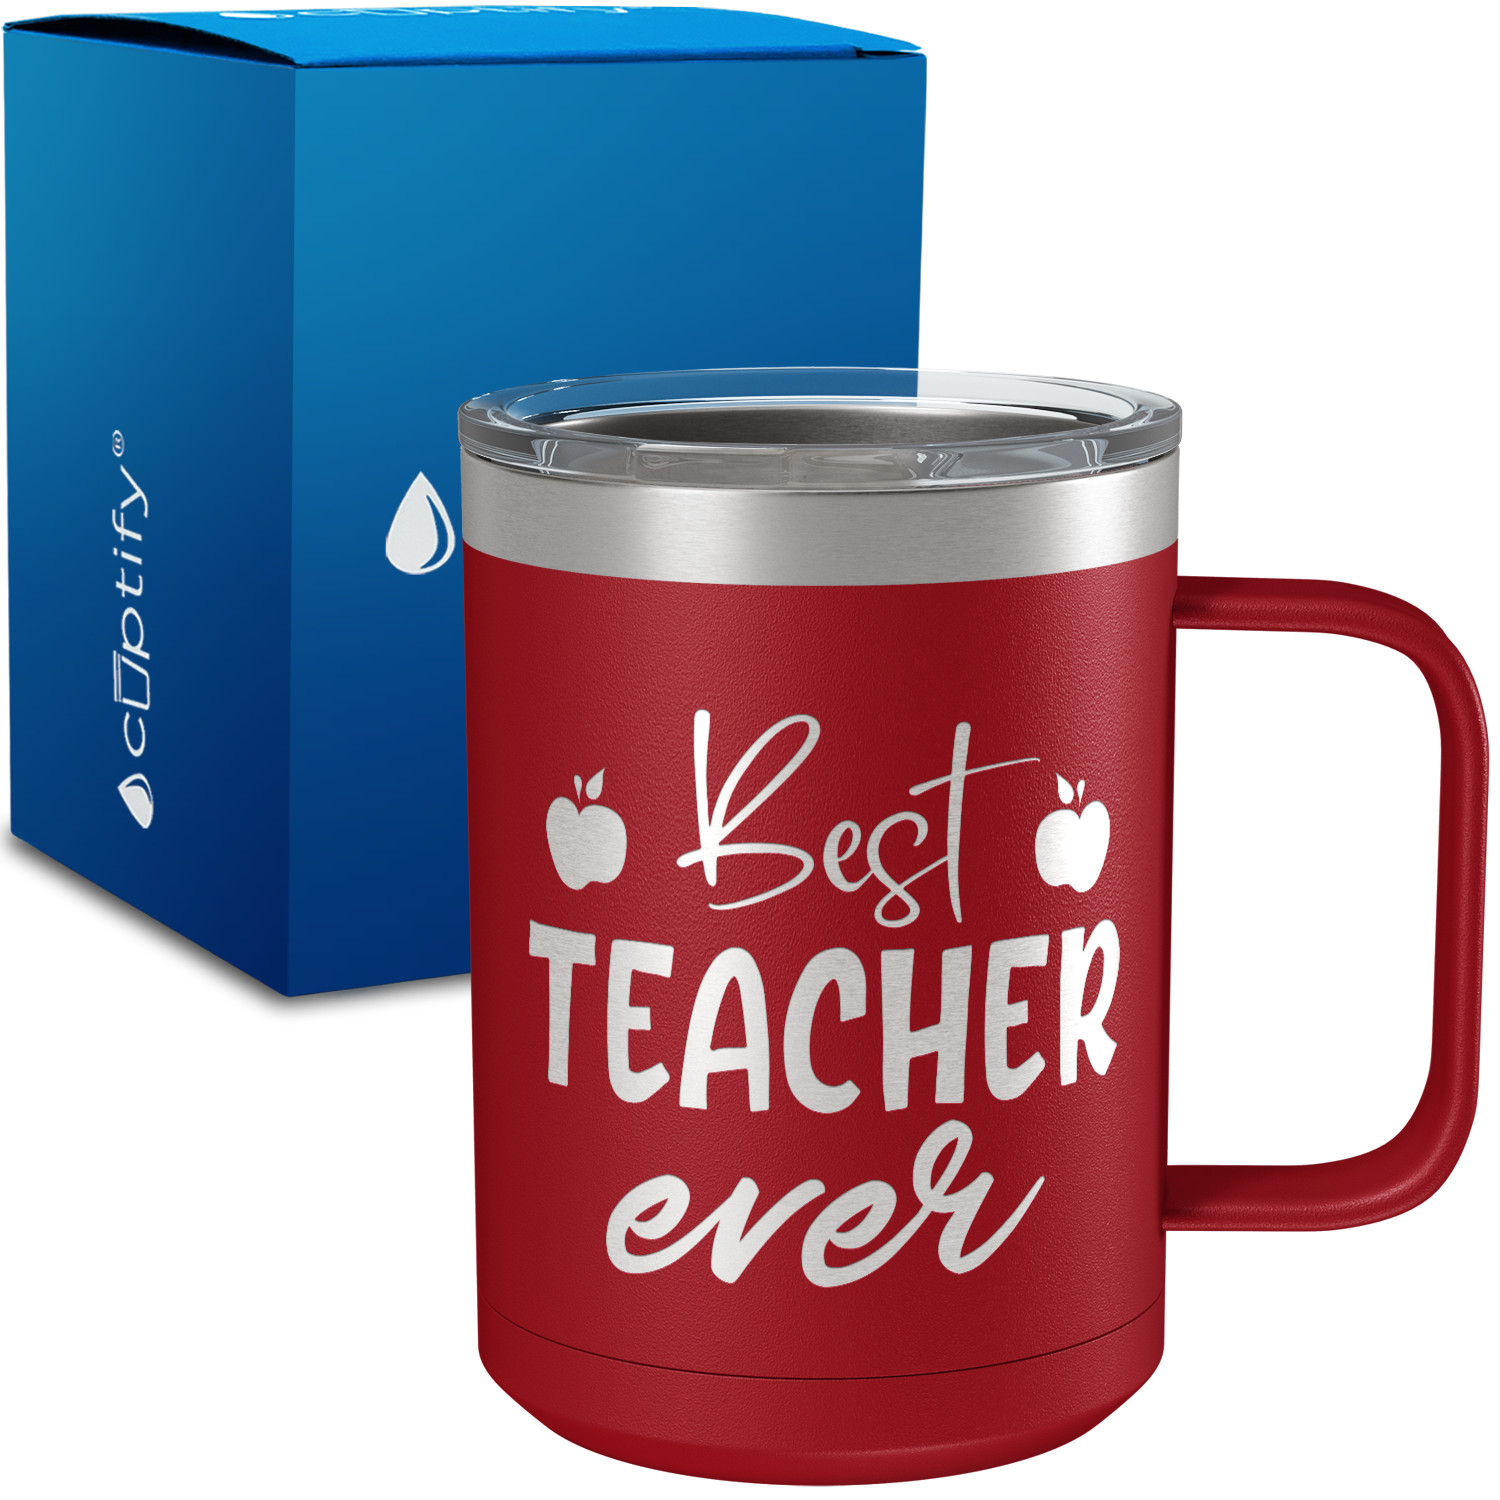 Best Teacher Ever Apples 15oz Stainless Steel Mug